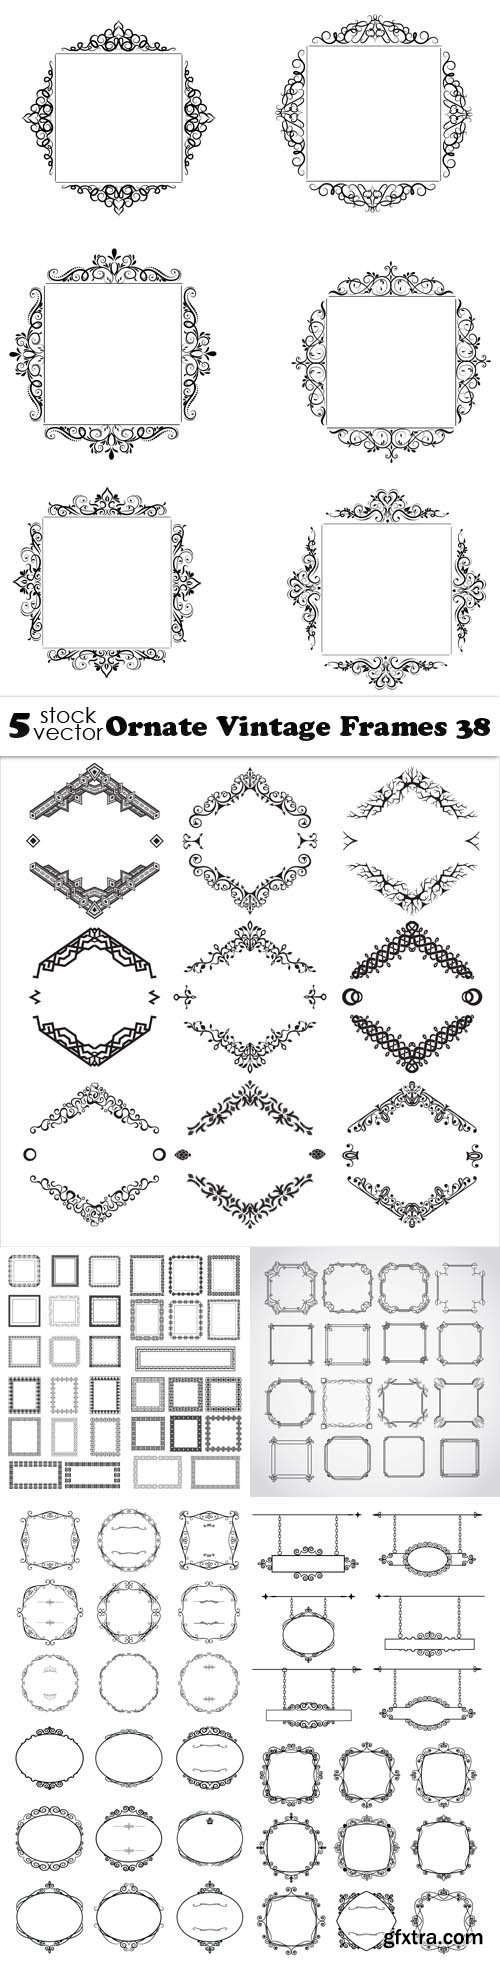 Vectors - Ornate Vintage Frames 38